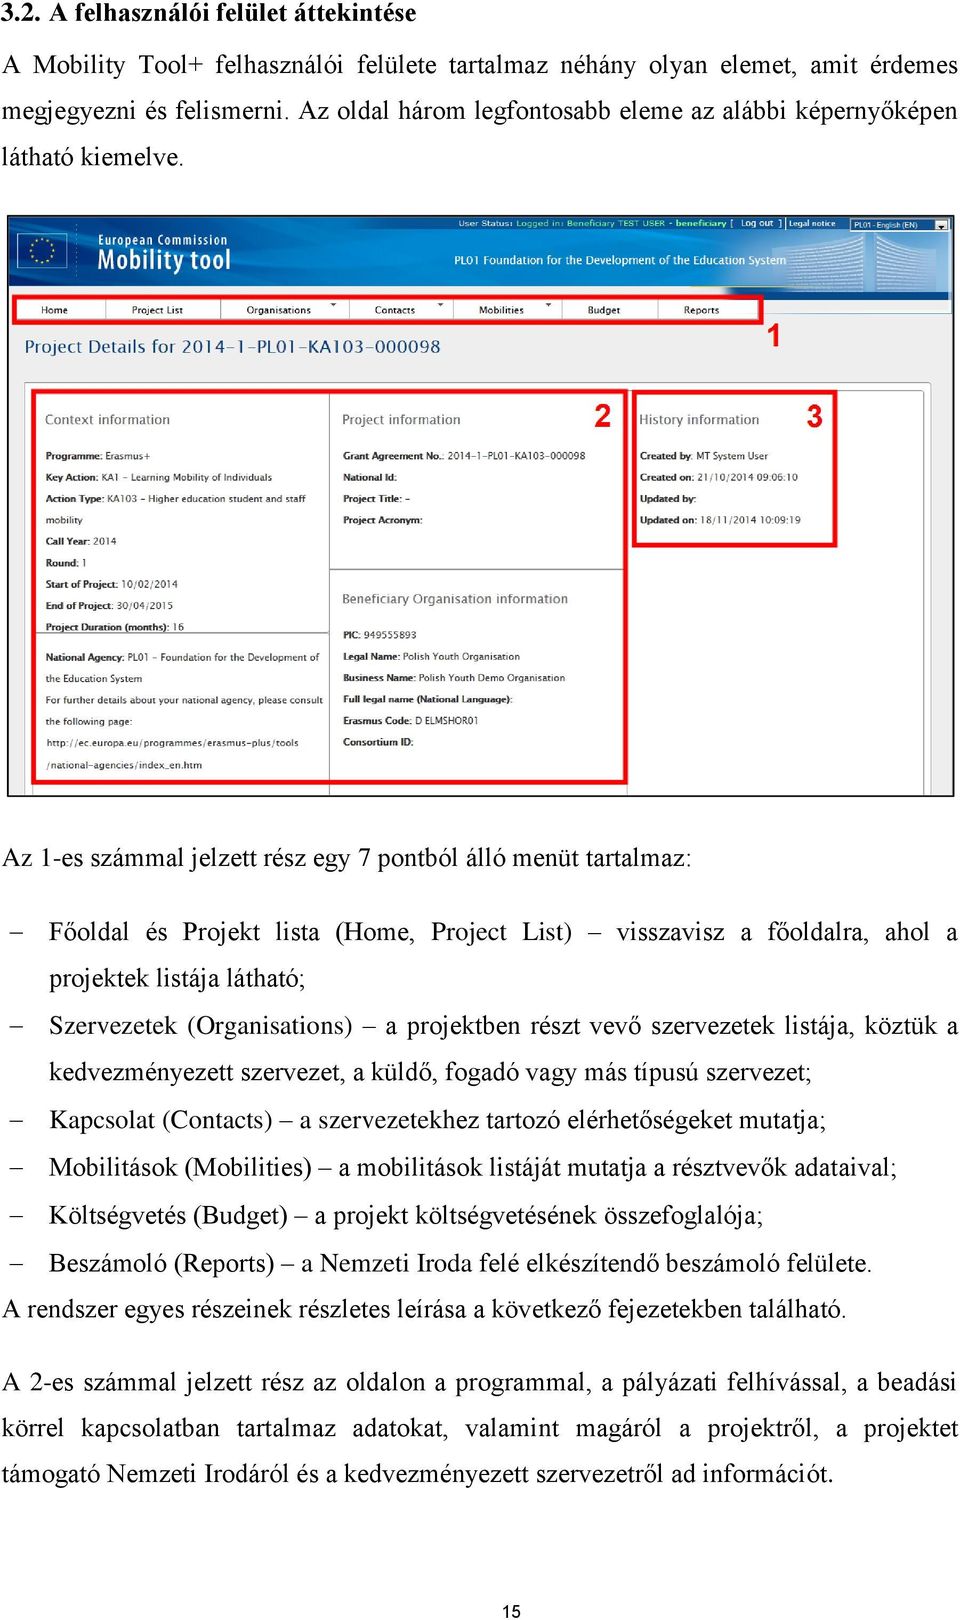 Mobility Tool+ kézikönyv az Erasmus+ program kedvezményezettjeinek - PDF  Ingyenes letöltés